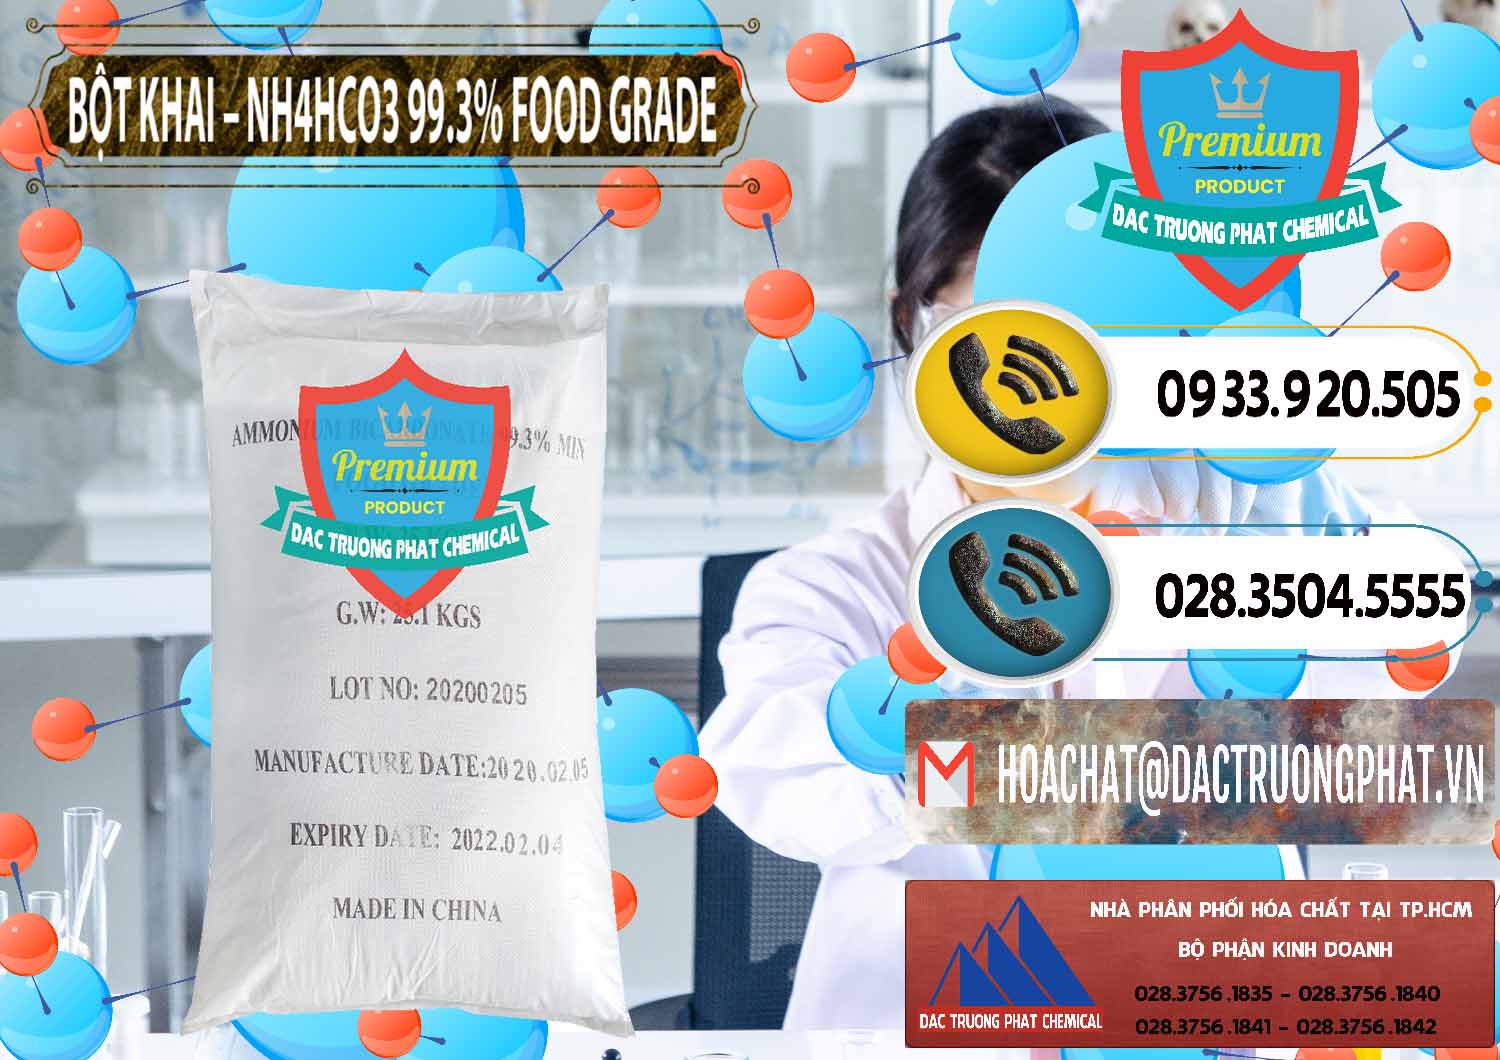 Công ty chuyên phân phối _ bán Ammonium Bicarbonate – Bột Khai NH4HCO3 Food Grade Trung Quốc China - 0019 - Chuyên kinh doanh _ cung cấp hóa chất tại TP.HCM - hoachatdetnhuom.vn